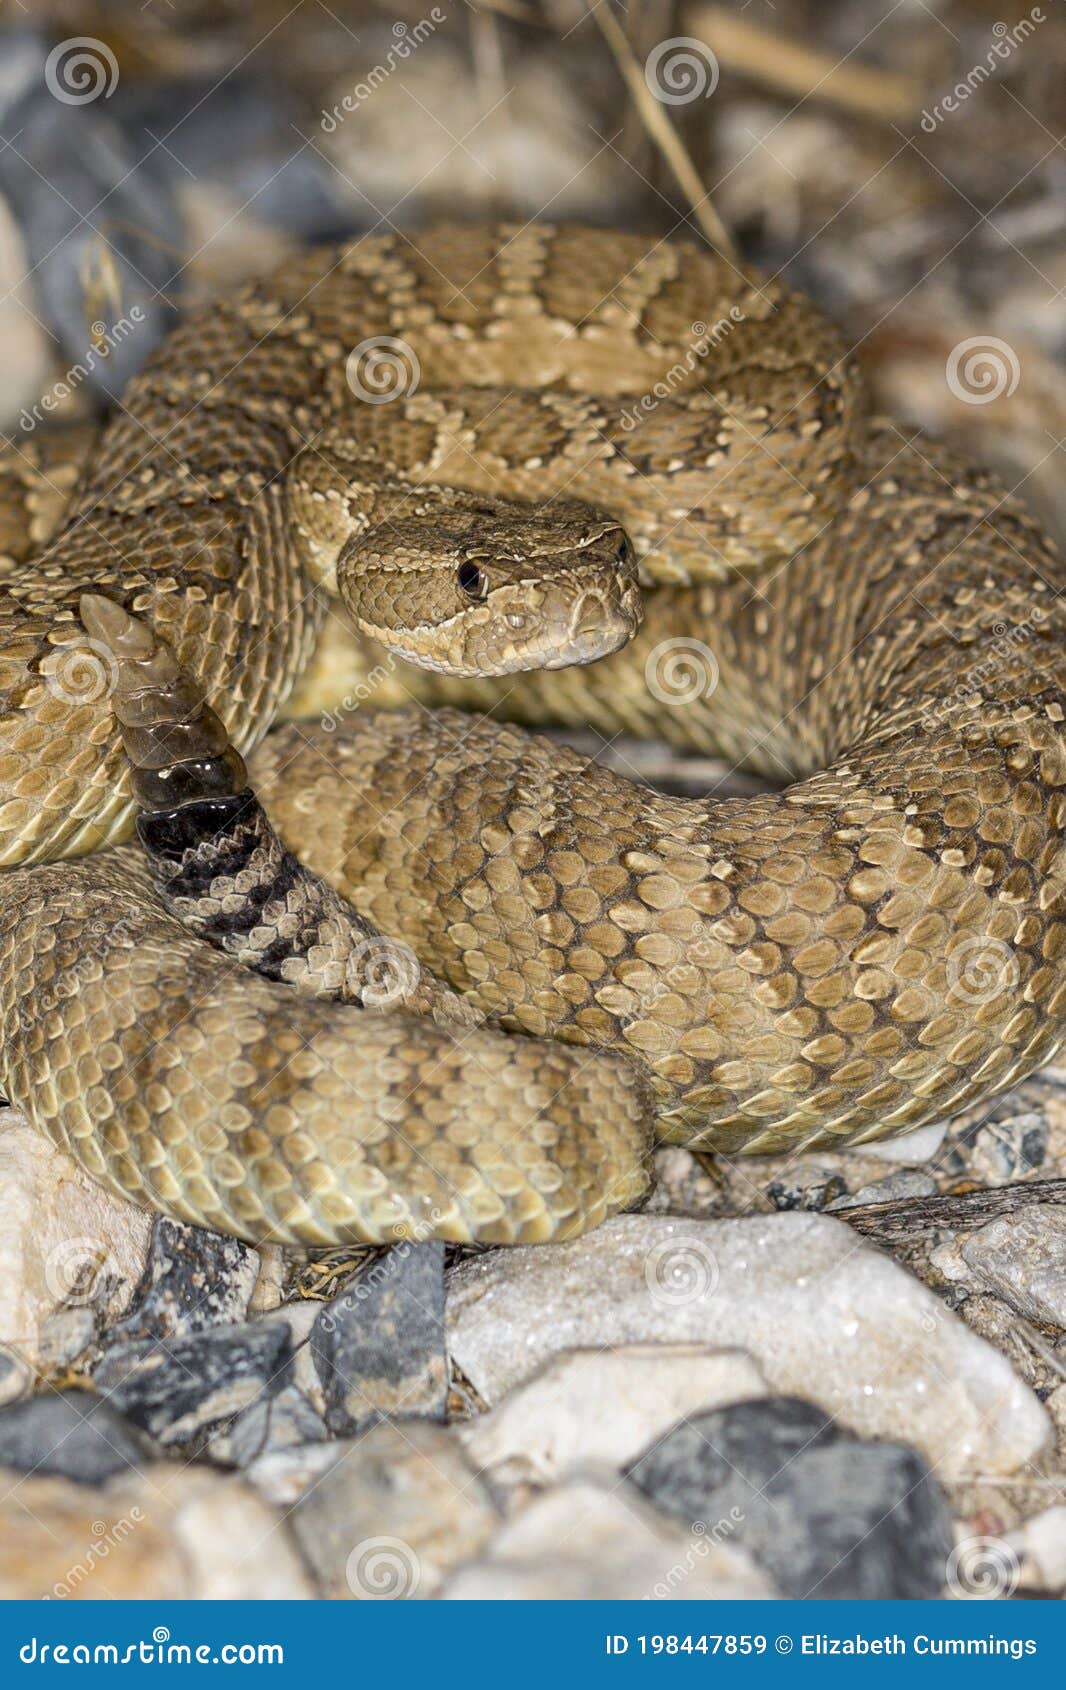 易变的地面蛇加州沙漠爬行动物 免版税图库摄影 - 图片: 31793127